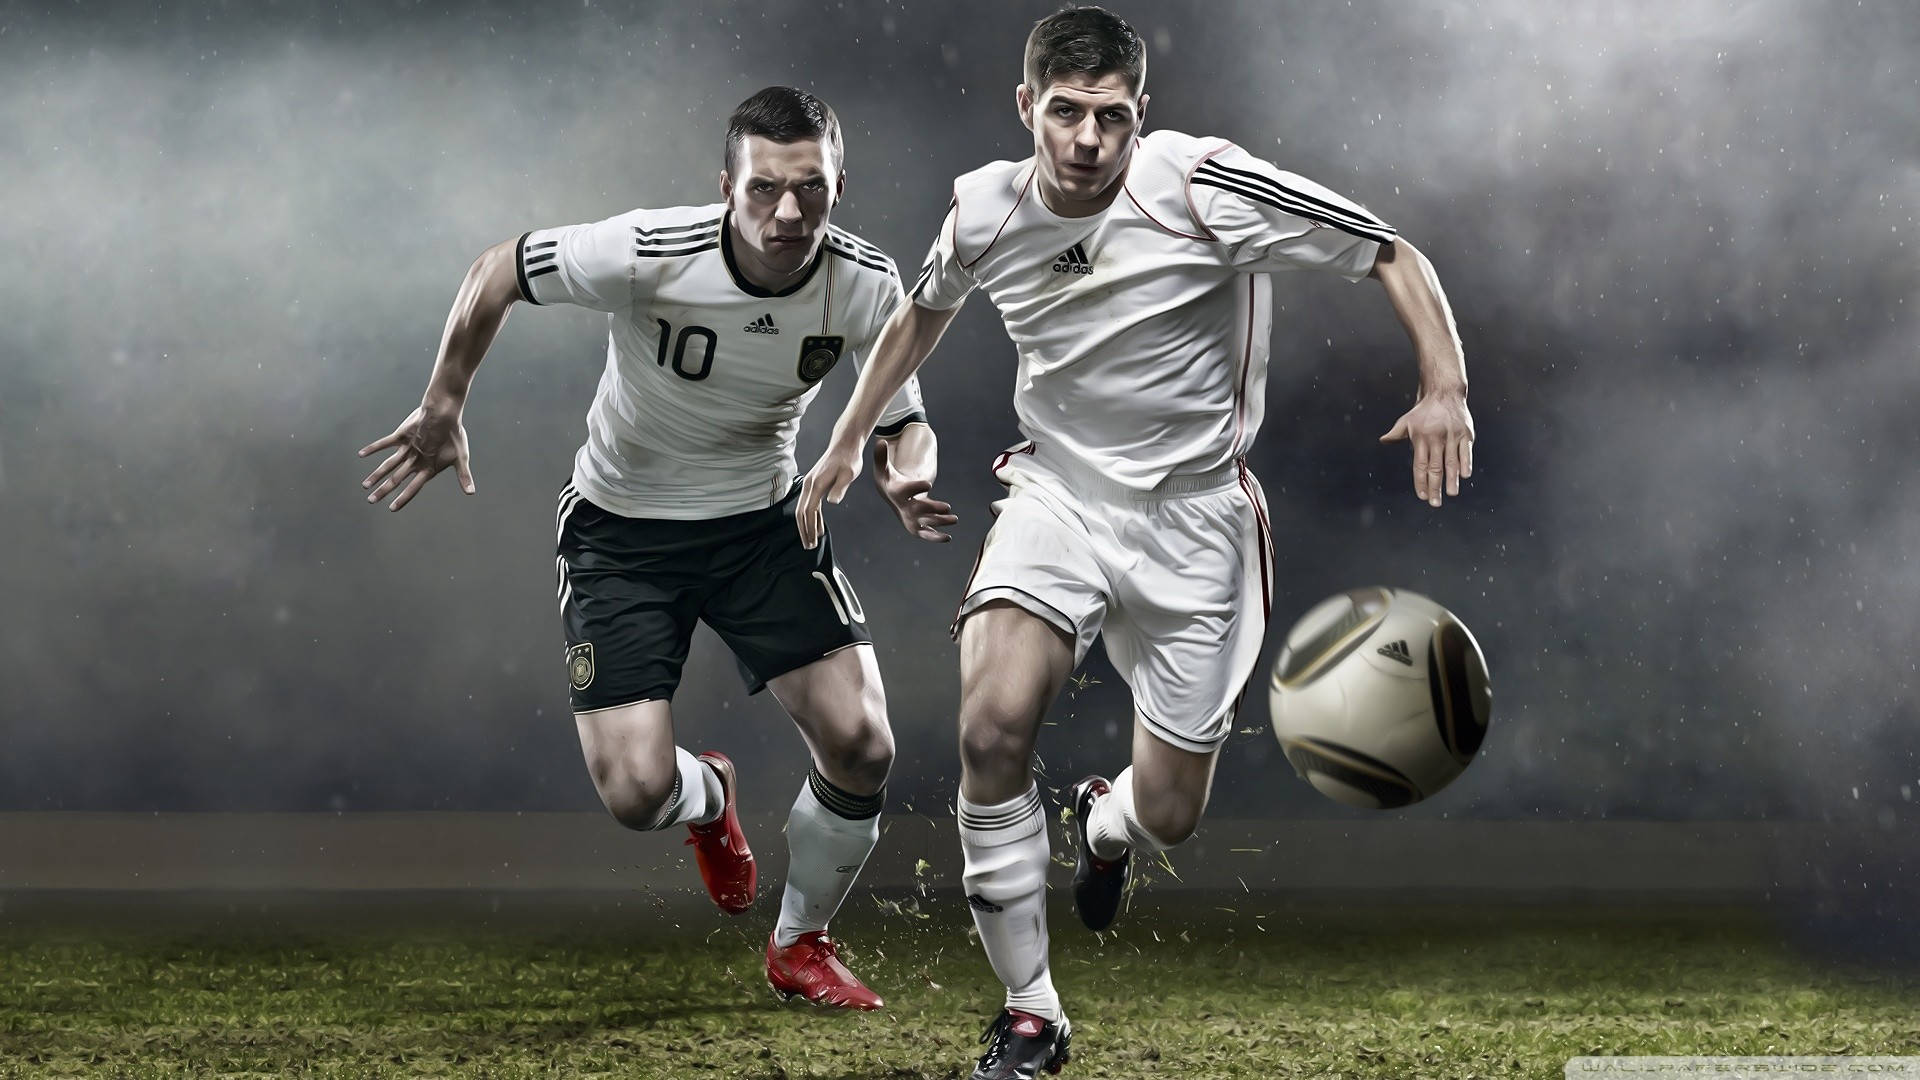 Zweispieler Spielen Fußball In Hd Wallpaper